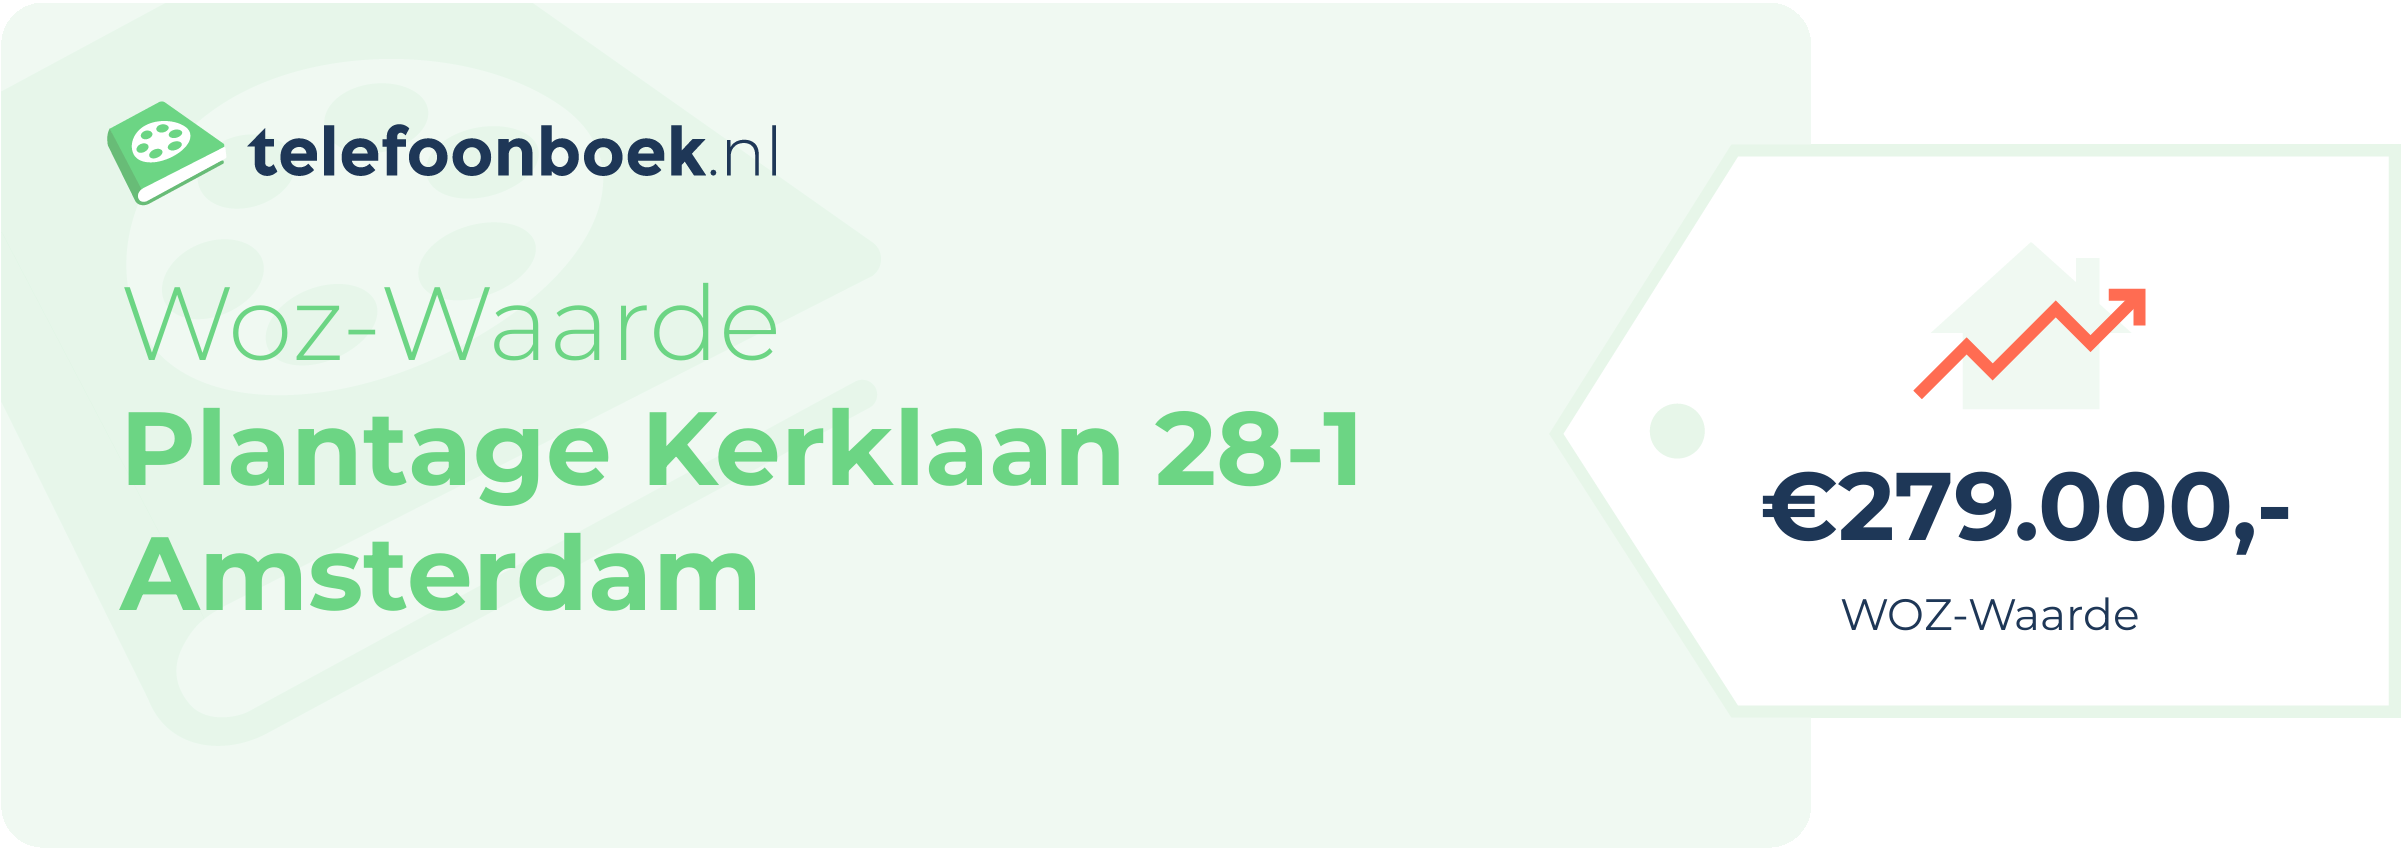 WOZ-waarde Plantage Kerklaan 28-1 Amsterdam